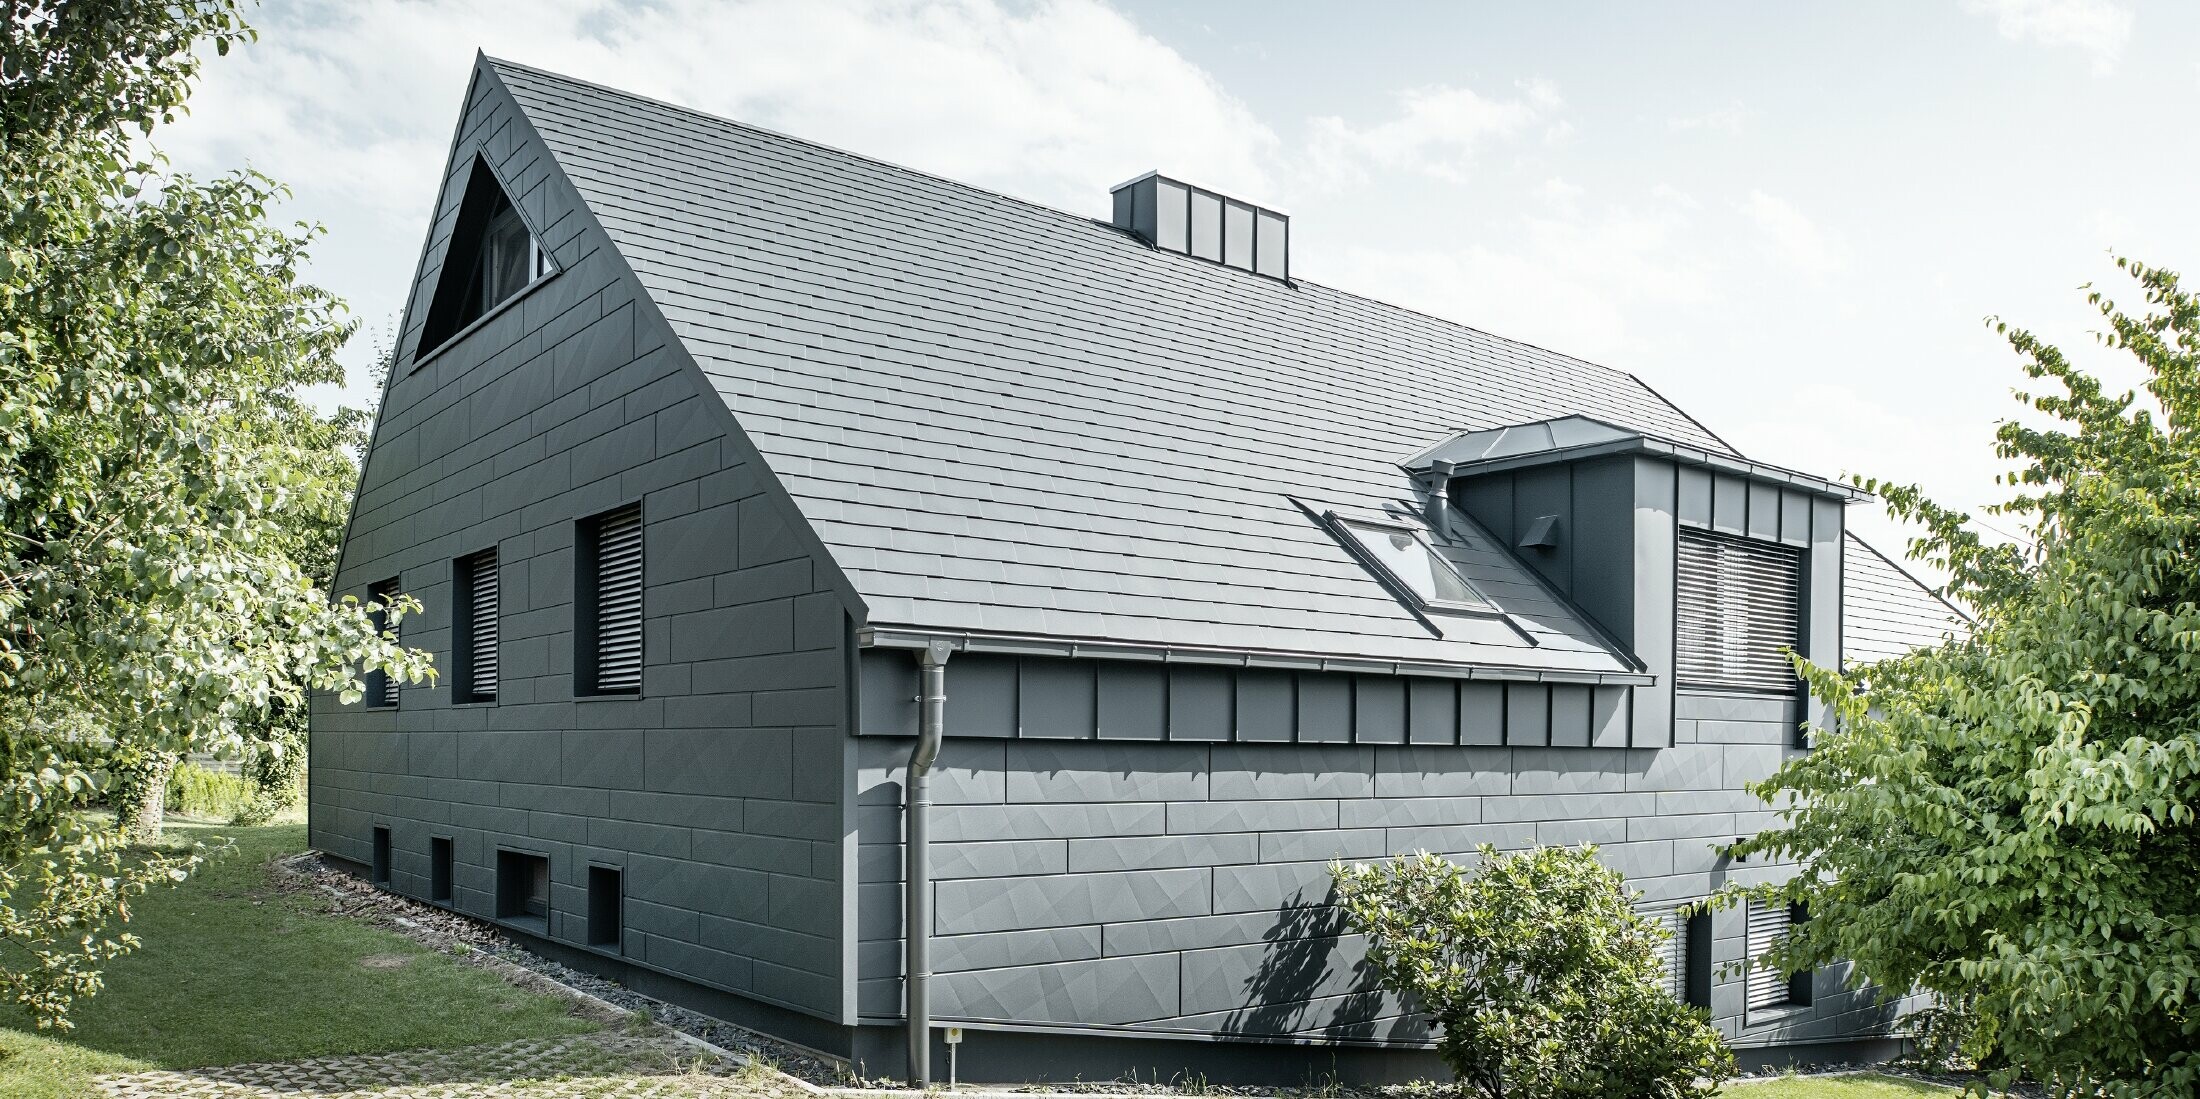 Boční pohled na dům se střechou z falcovaného šindele v barvě P.10 antracitové